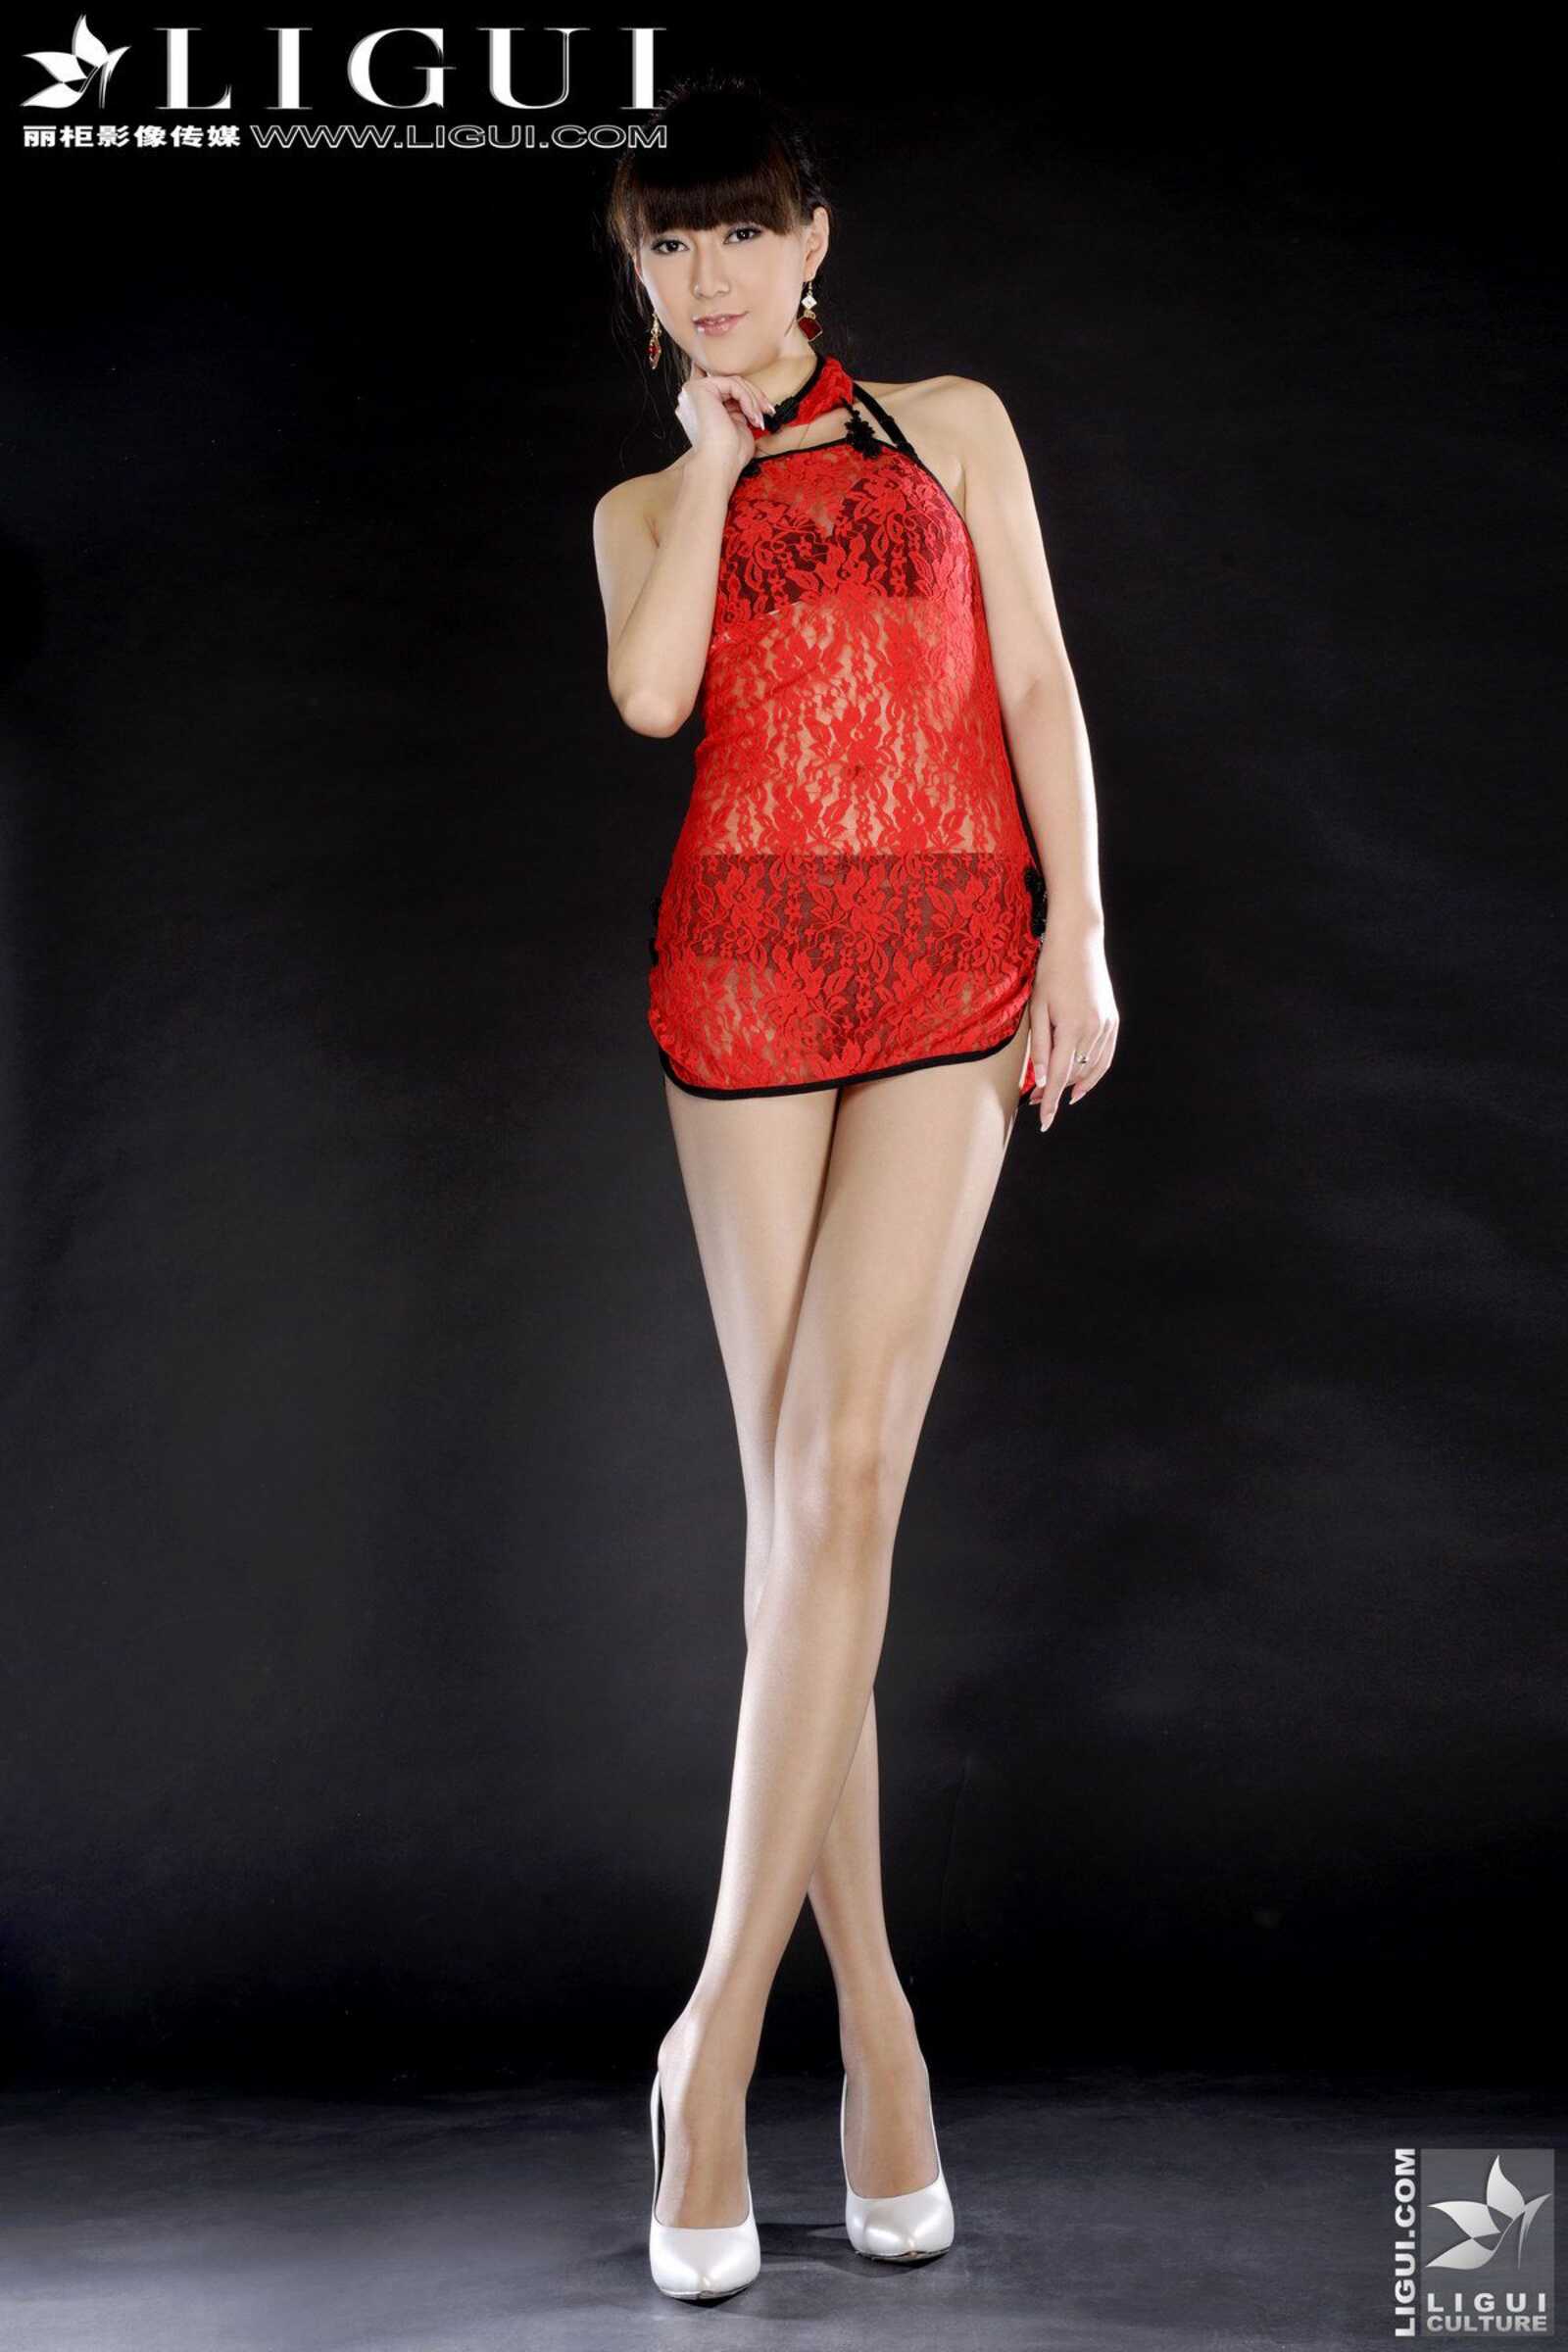 Model Cherry《火红的中国情》 [丽柜LiGui] 美腿玉足第1张